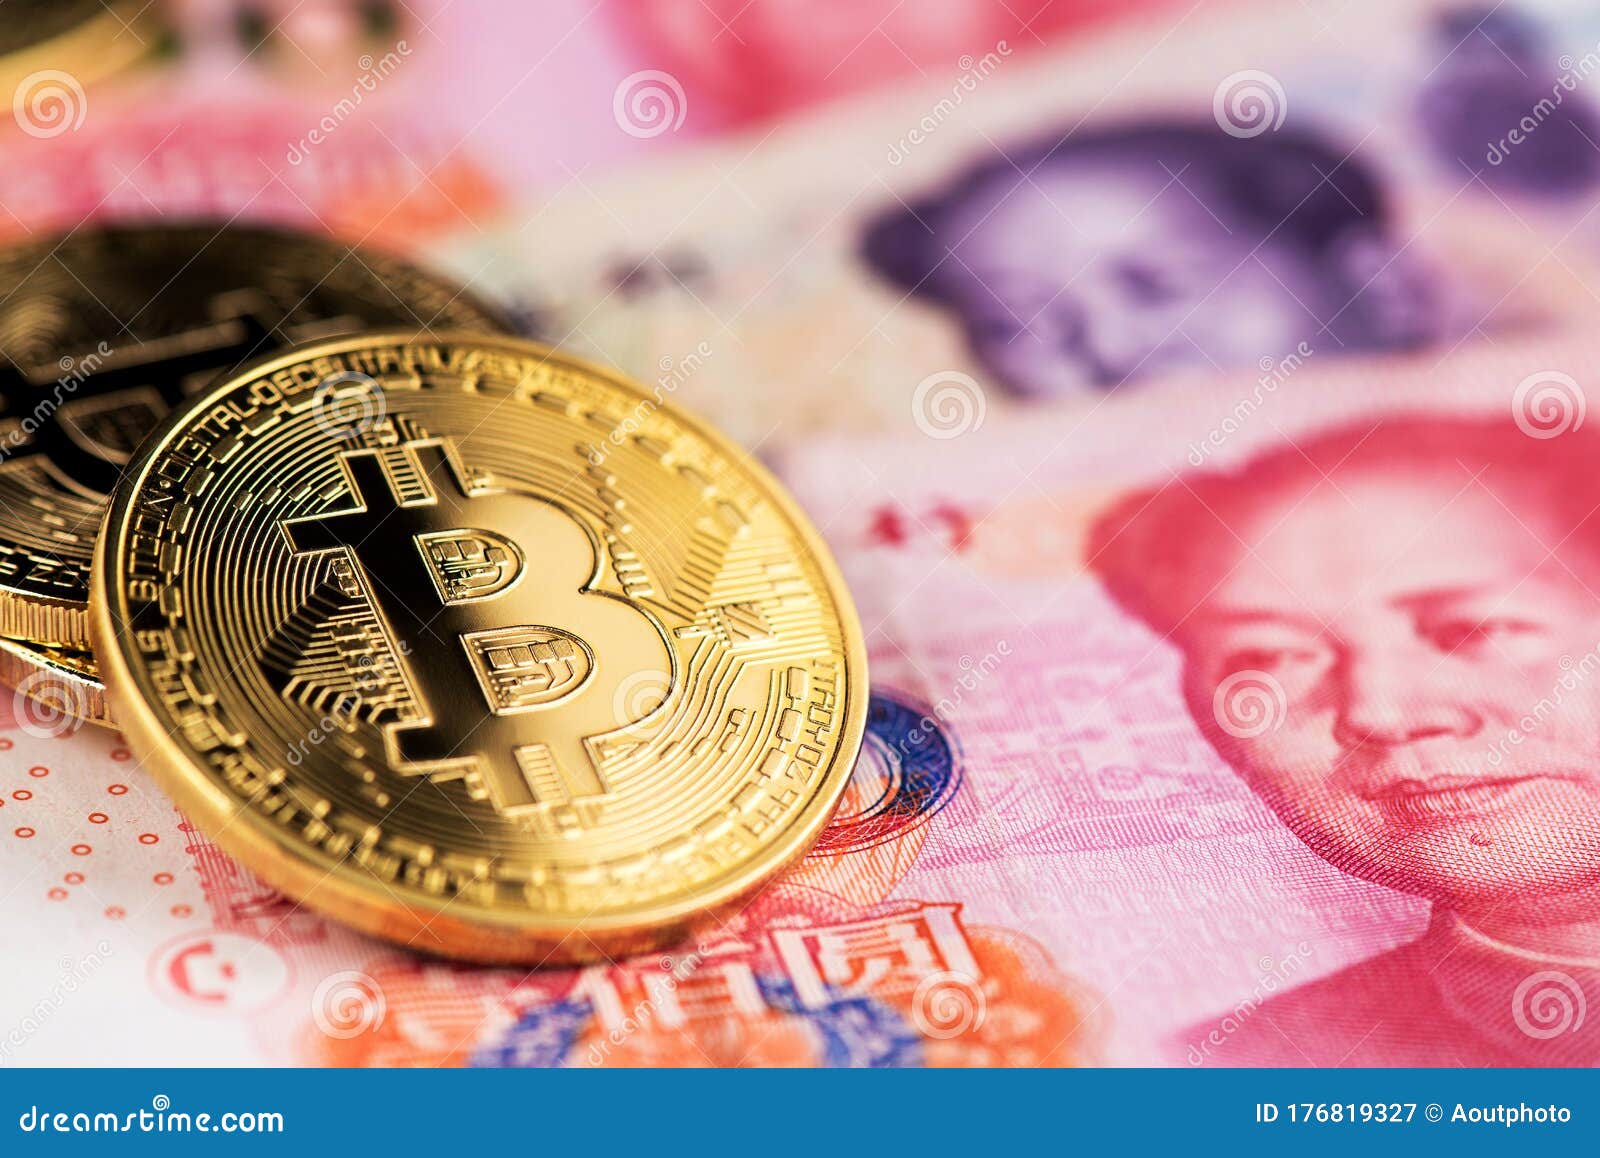 Yuan Chain Coin (YCC) price